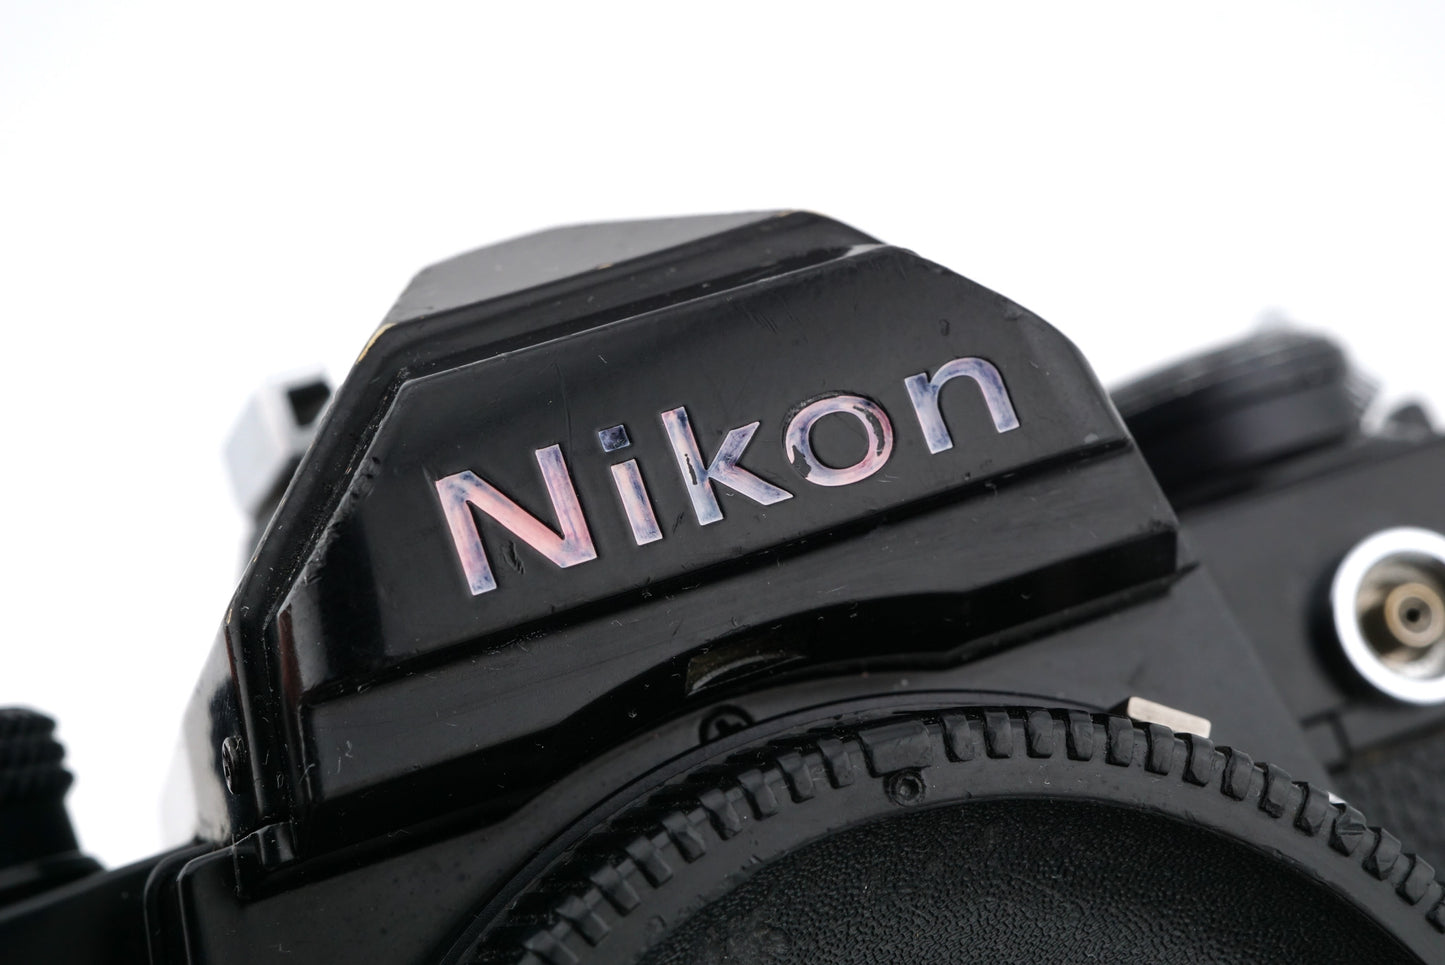 Nikon FM